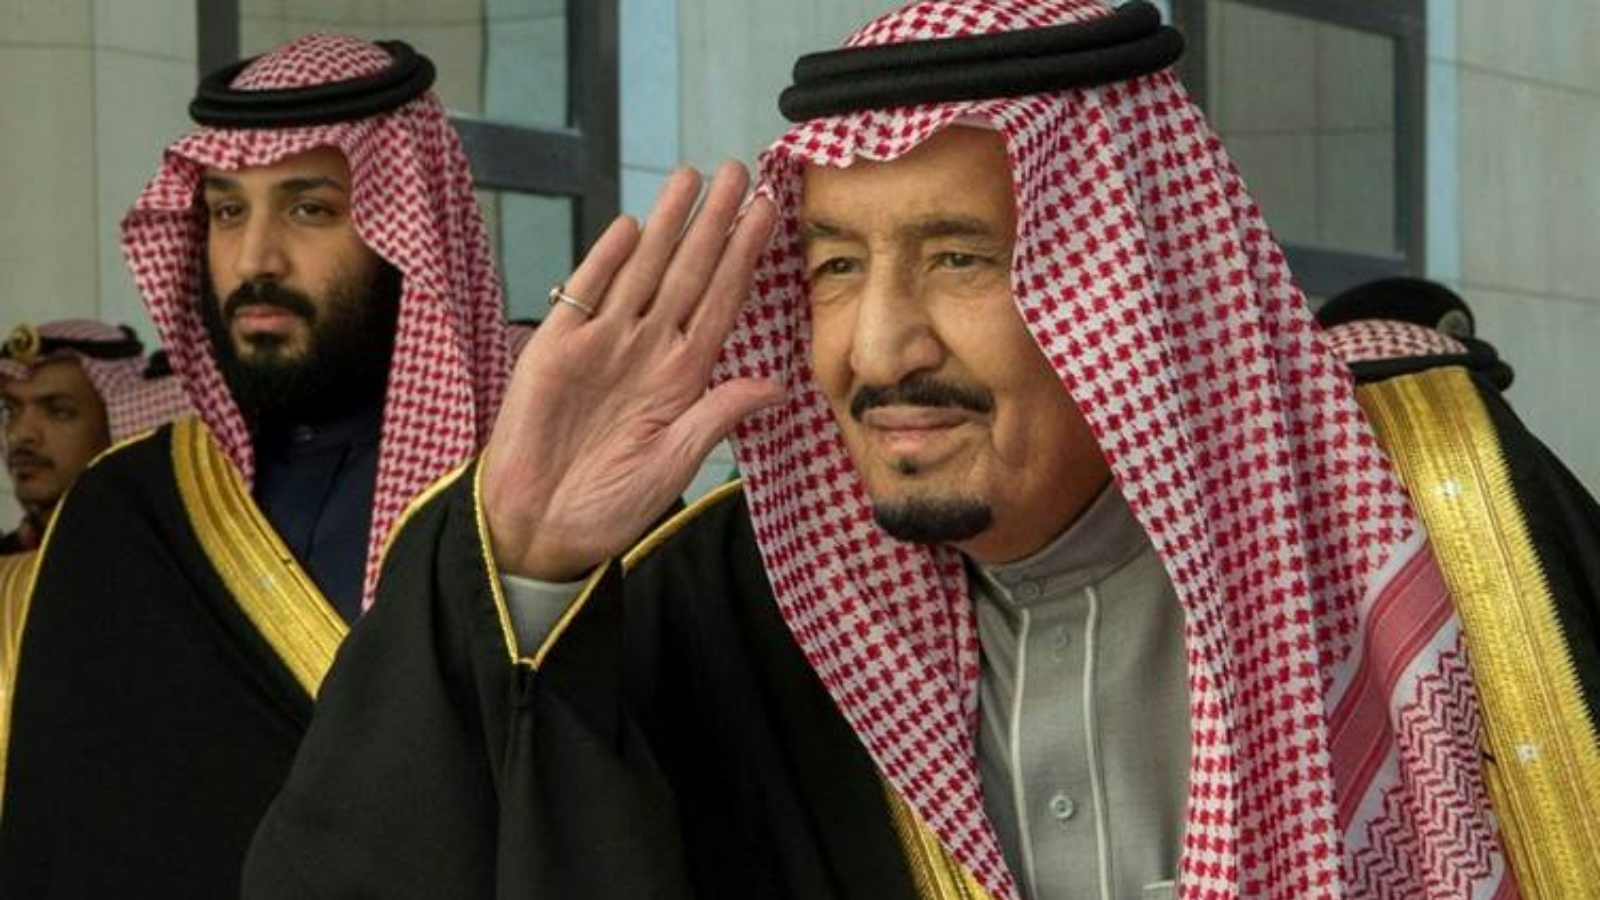 السعودية نيوز |  الملك سلمان: نتابع بقلق سياسة إيران وحريصون على استقرار اليمن 